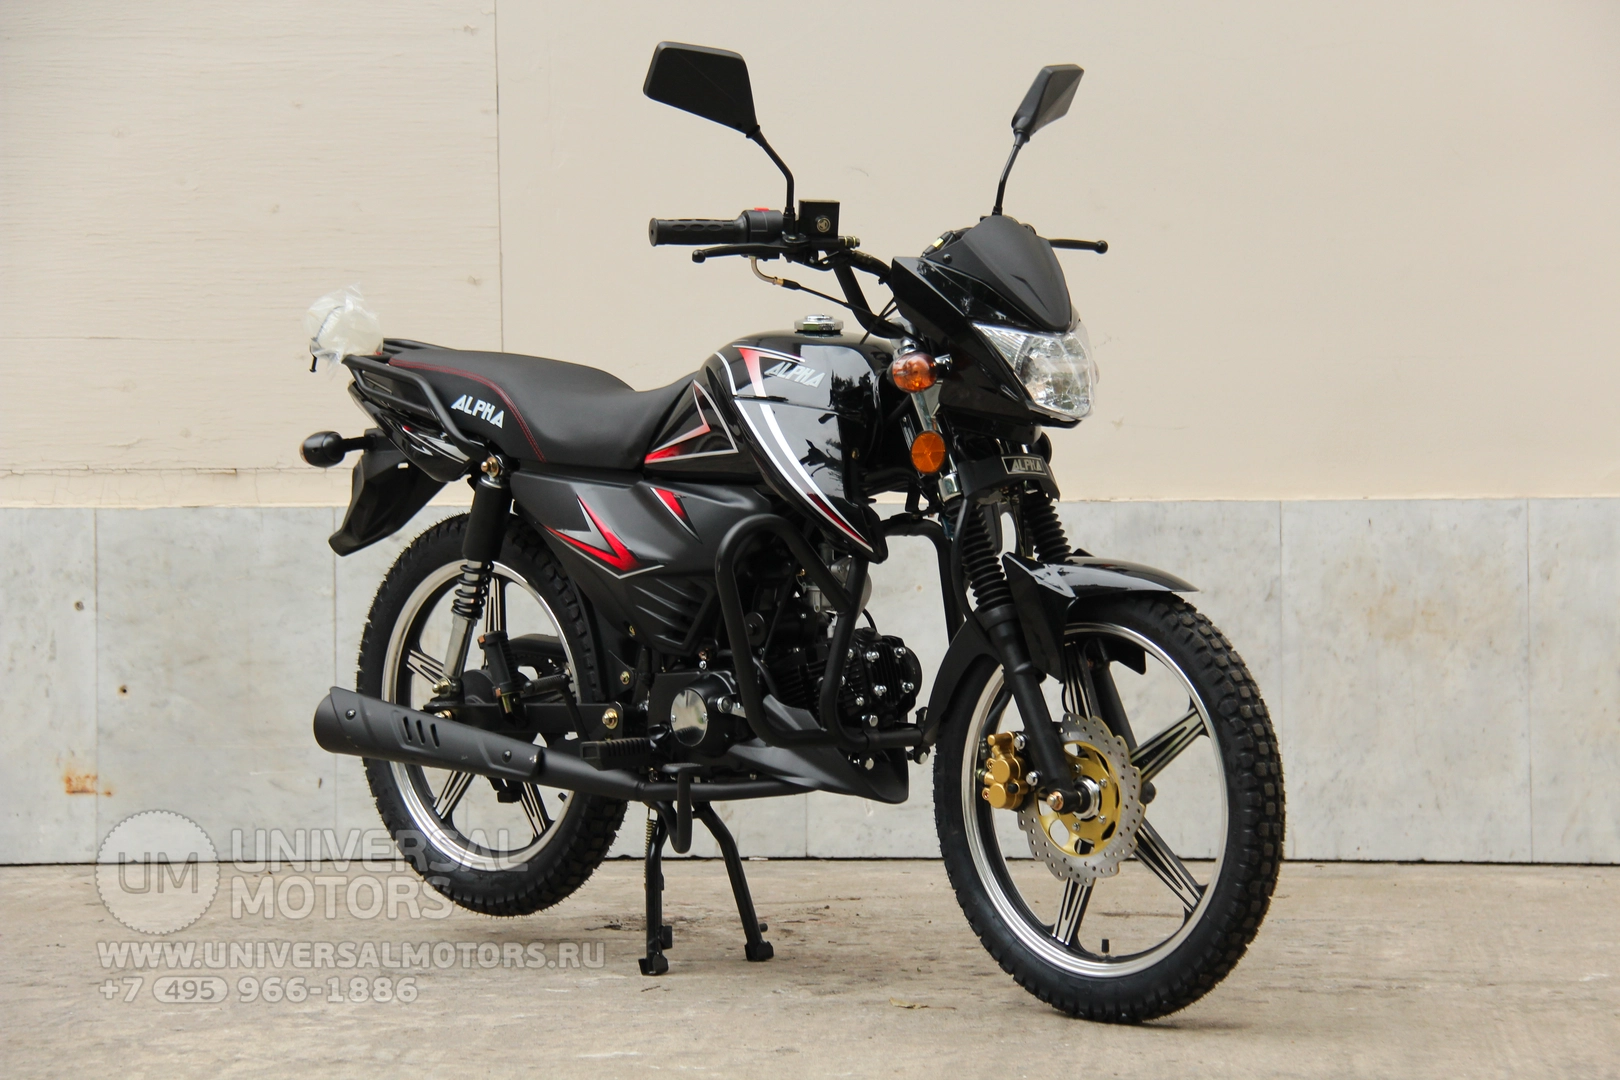 Мотоцикл Universal Alpha CX 125 (50), 21291980071636374433